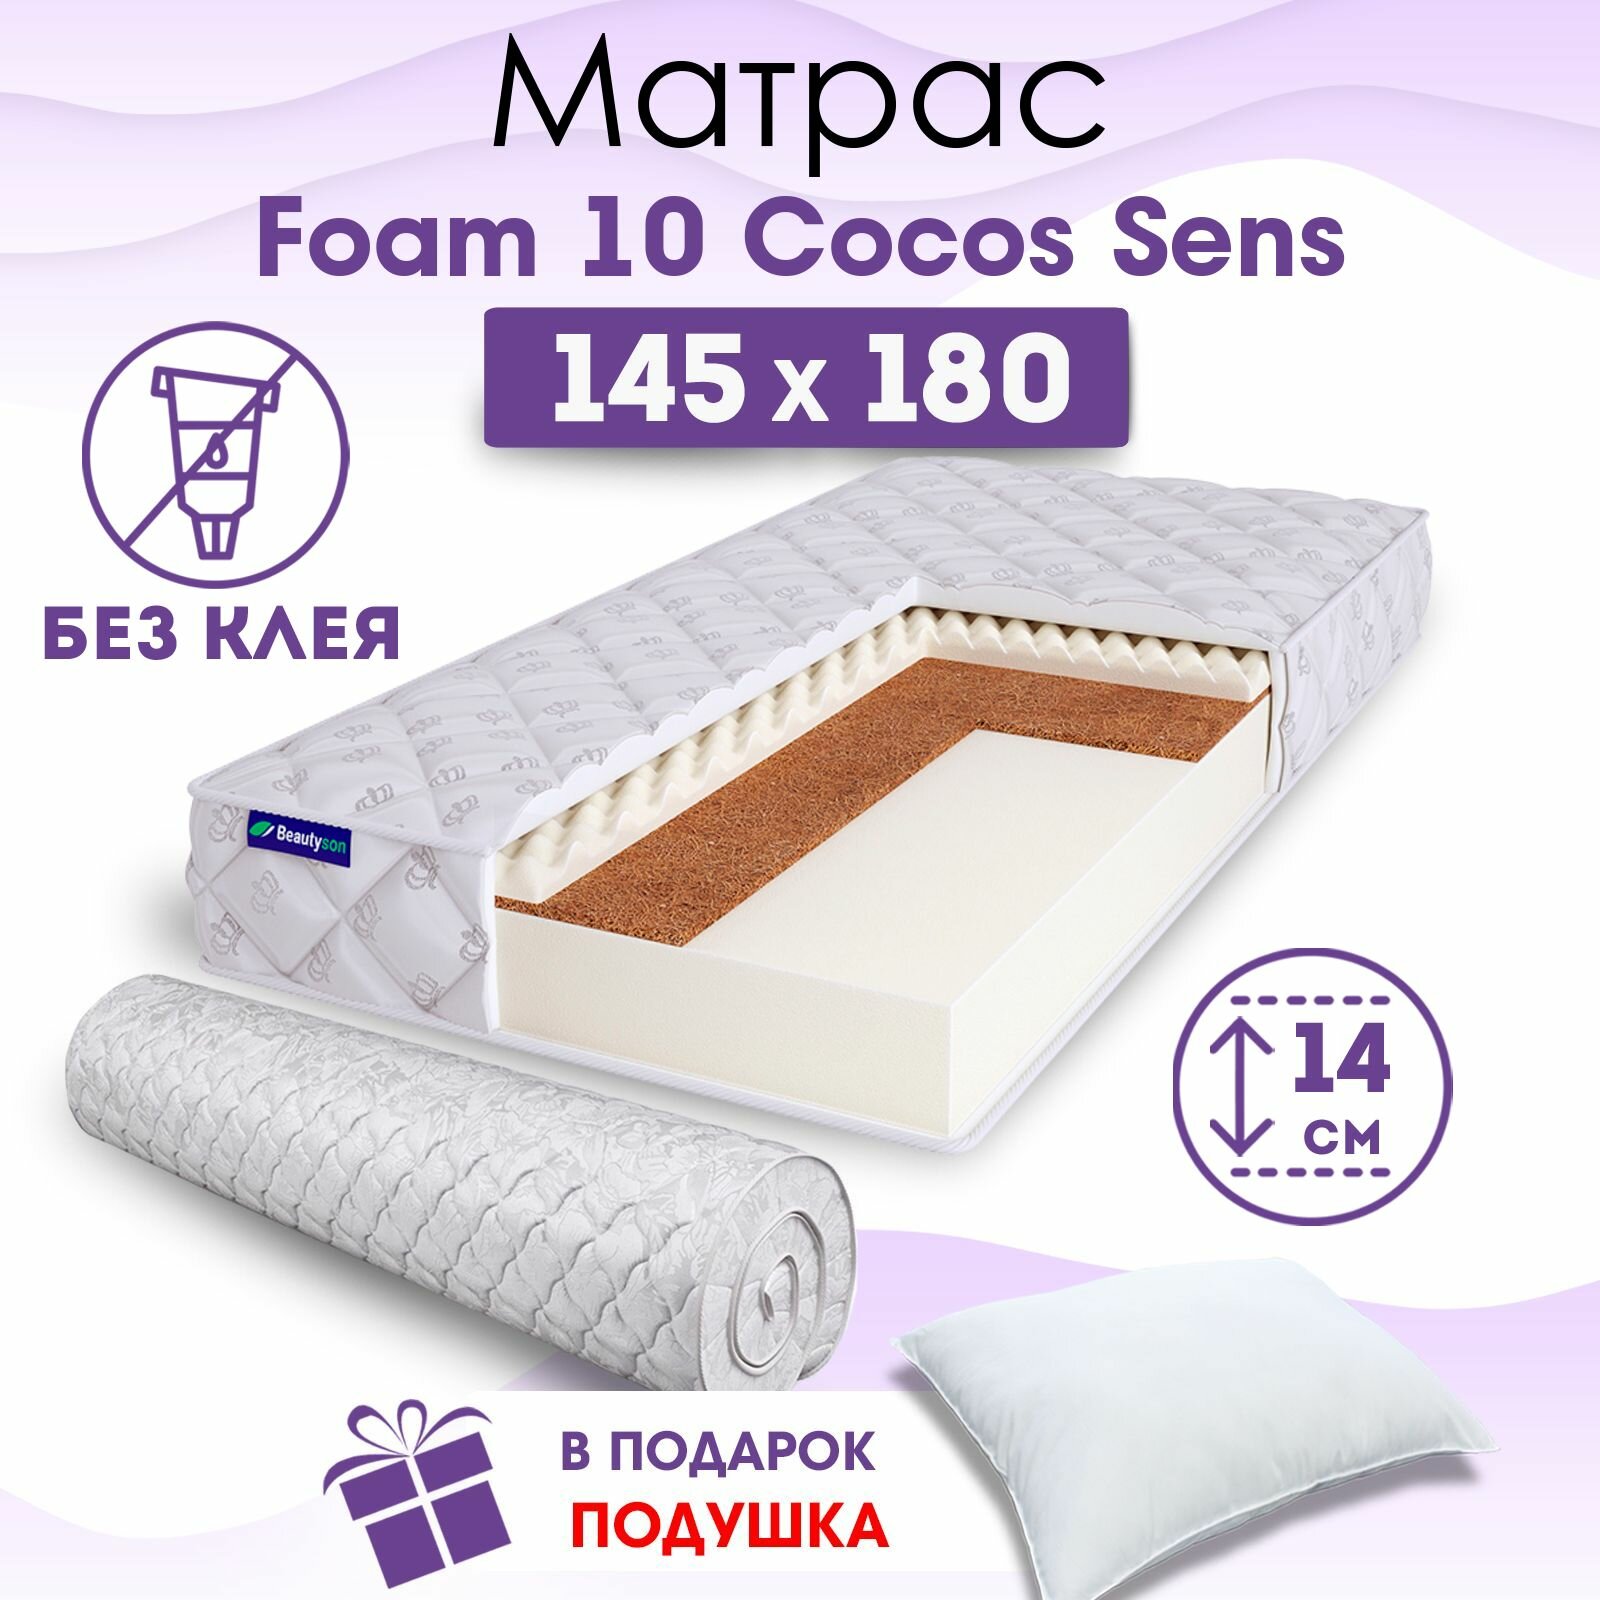 Ортопедический матрас Beautyson Foam 10 Cocos Sens без клея, 145х180, 14 см, беспружинный, двуспальный, на кровать, для дивана, умеренно мягкий